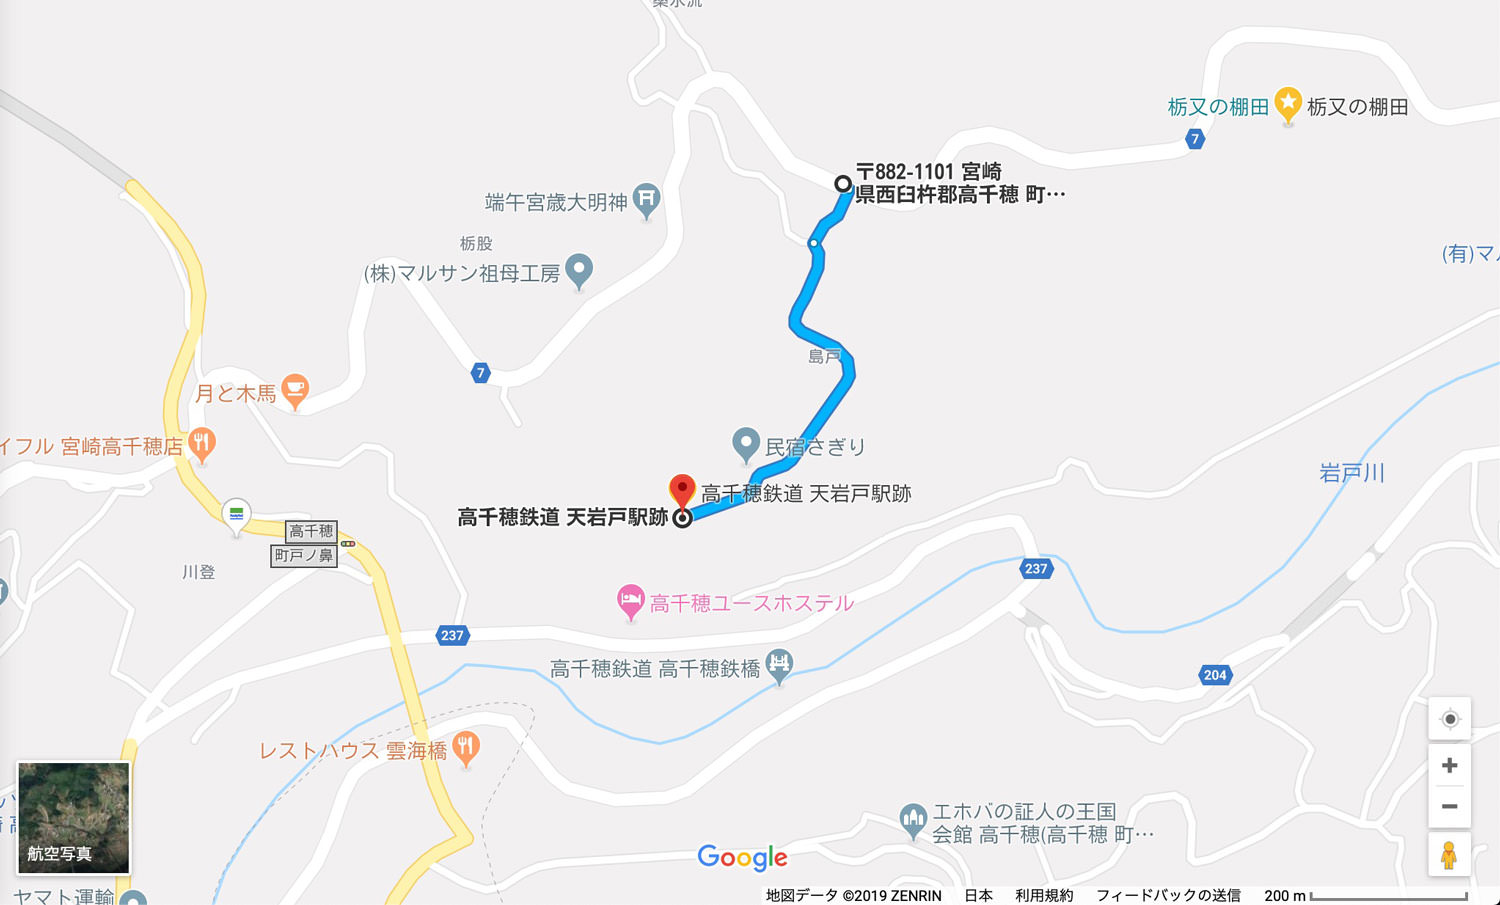 天岩戸駅へのアクセスルート